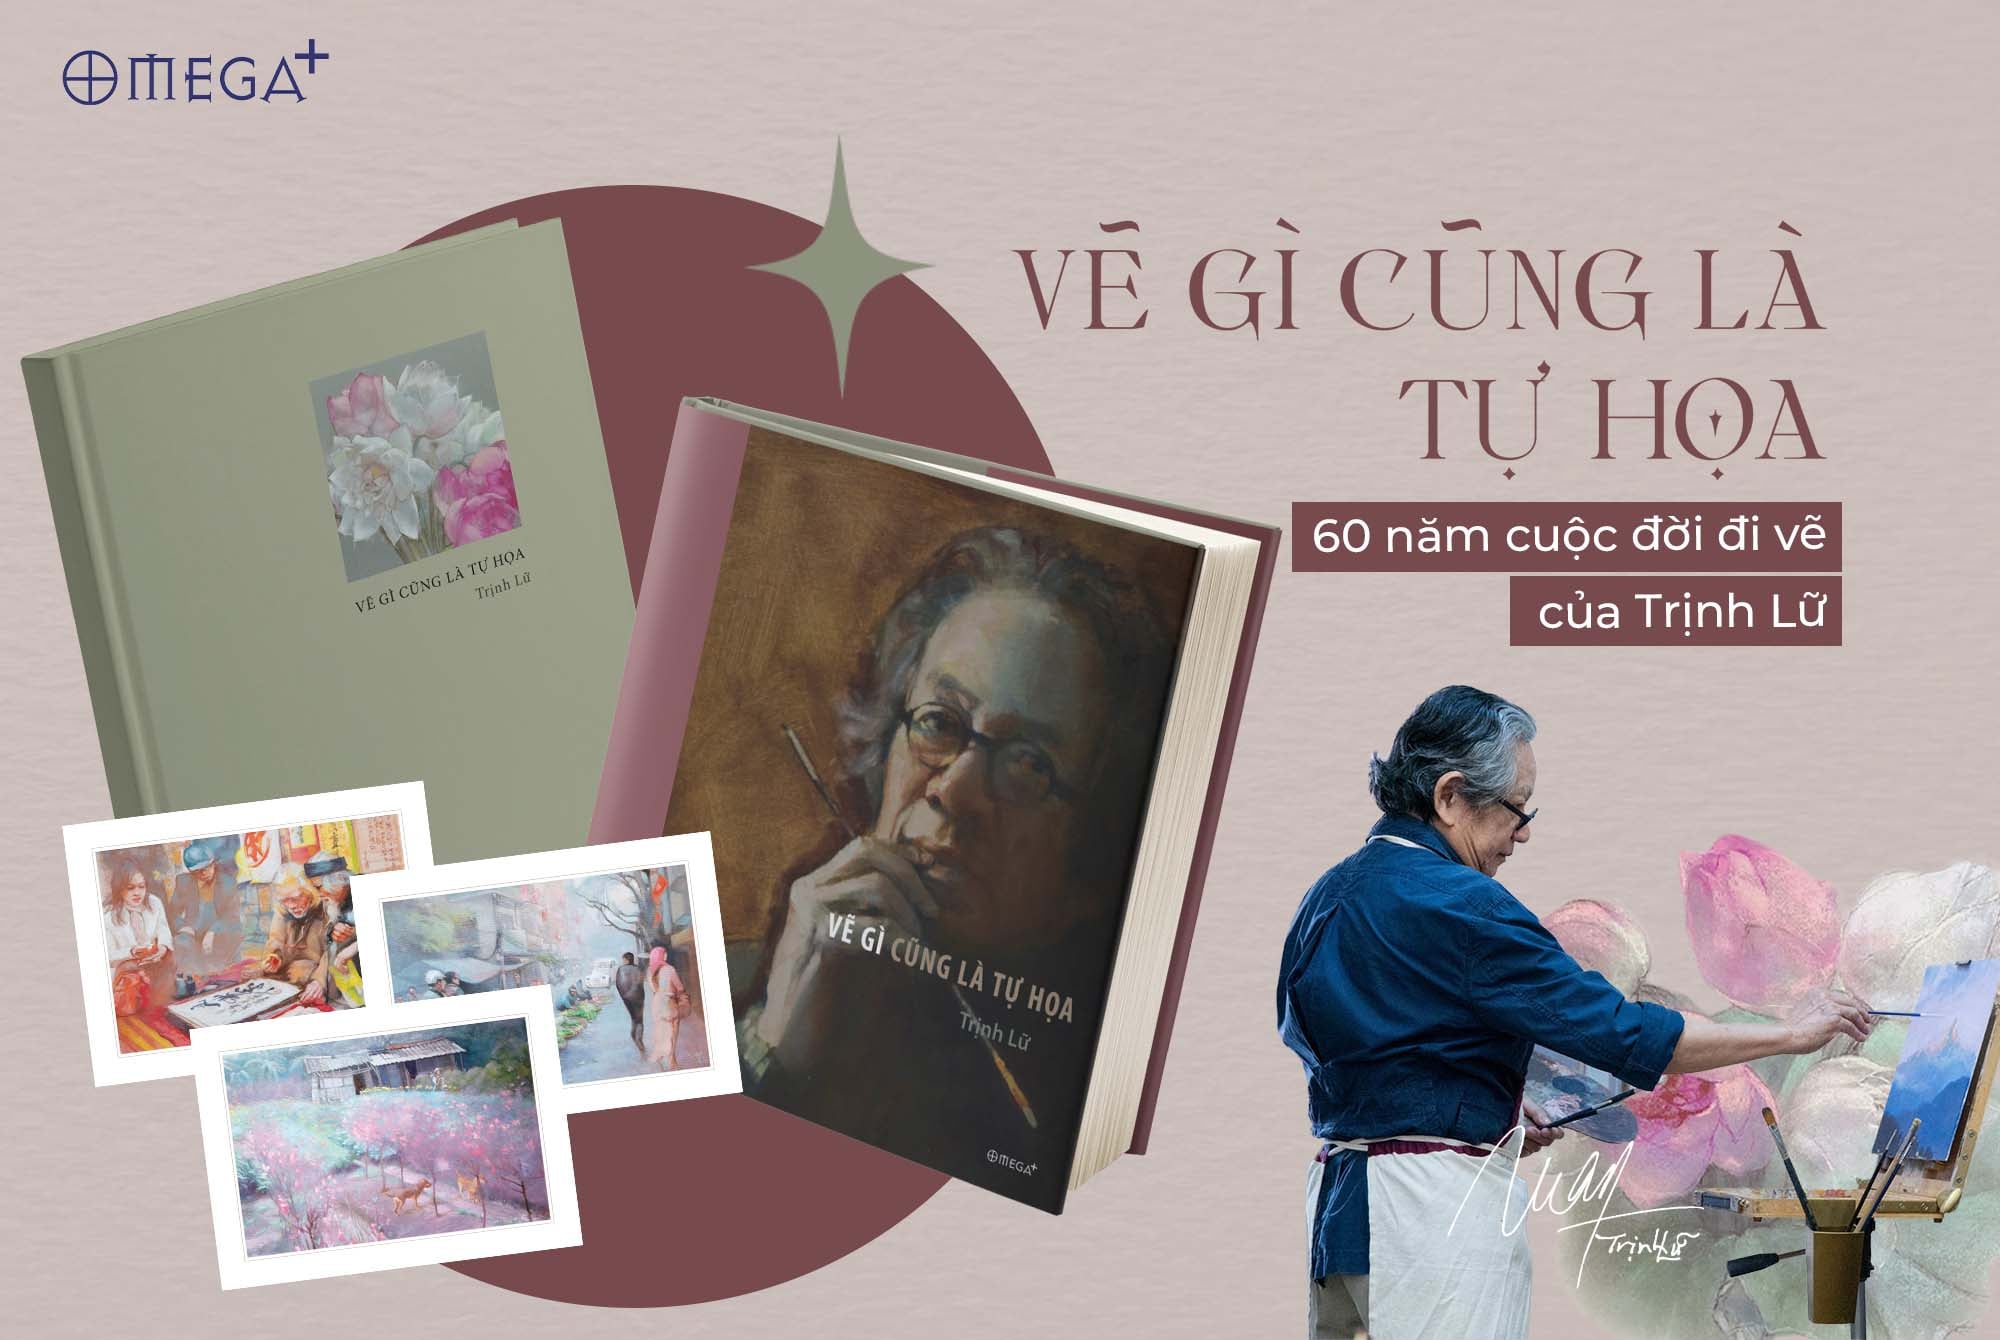 “Vẽ gì cũng là tự họa – ghi lại 60 năm làm nghề của họa sĩ Trịnh Lữ là một cuốn sách nghệ thuật đang “đắt hàng”.